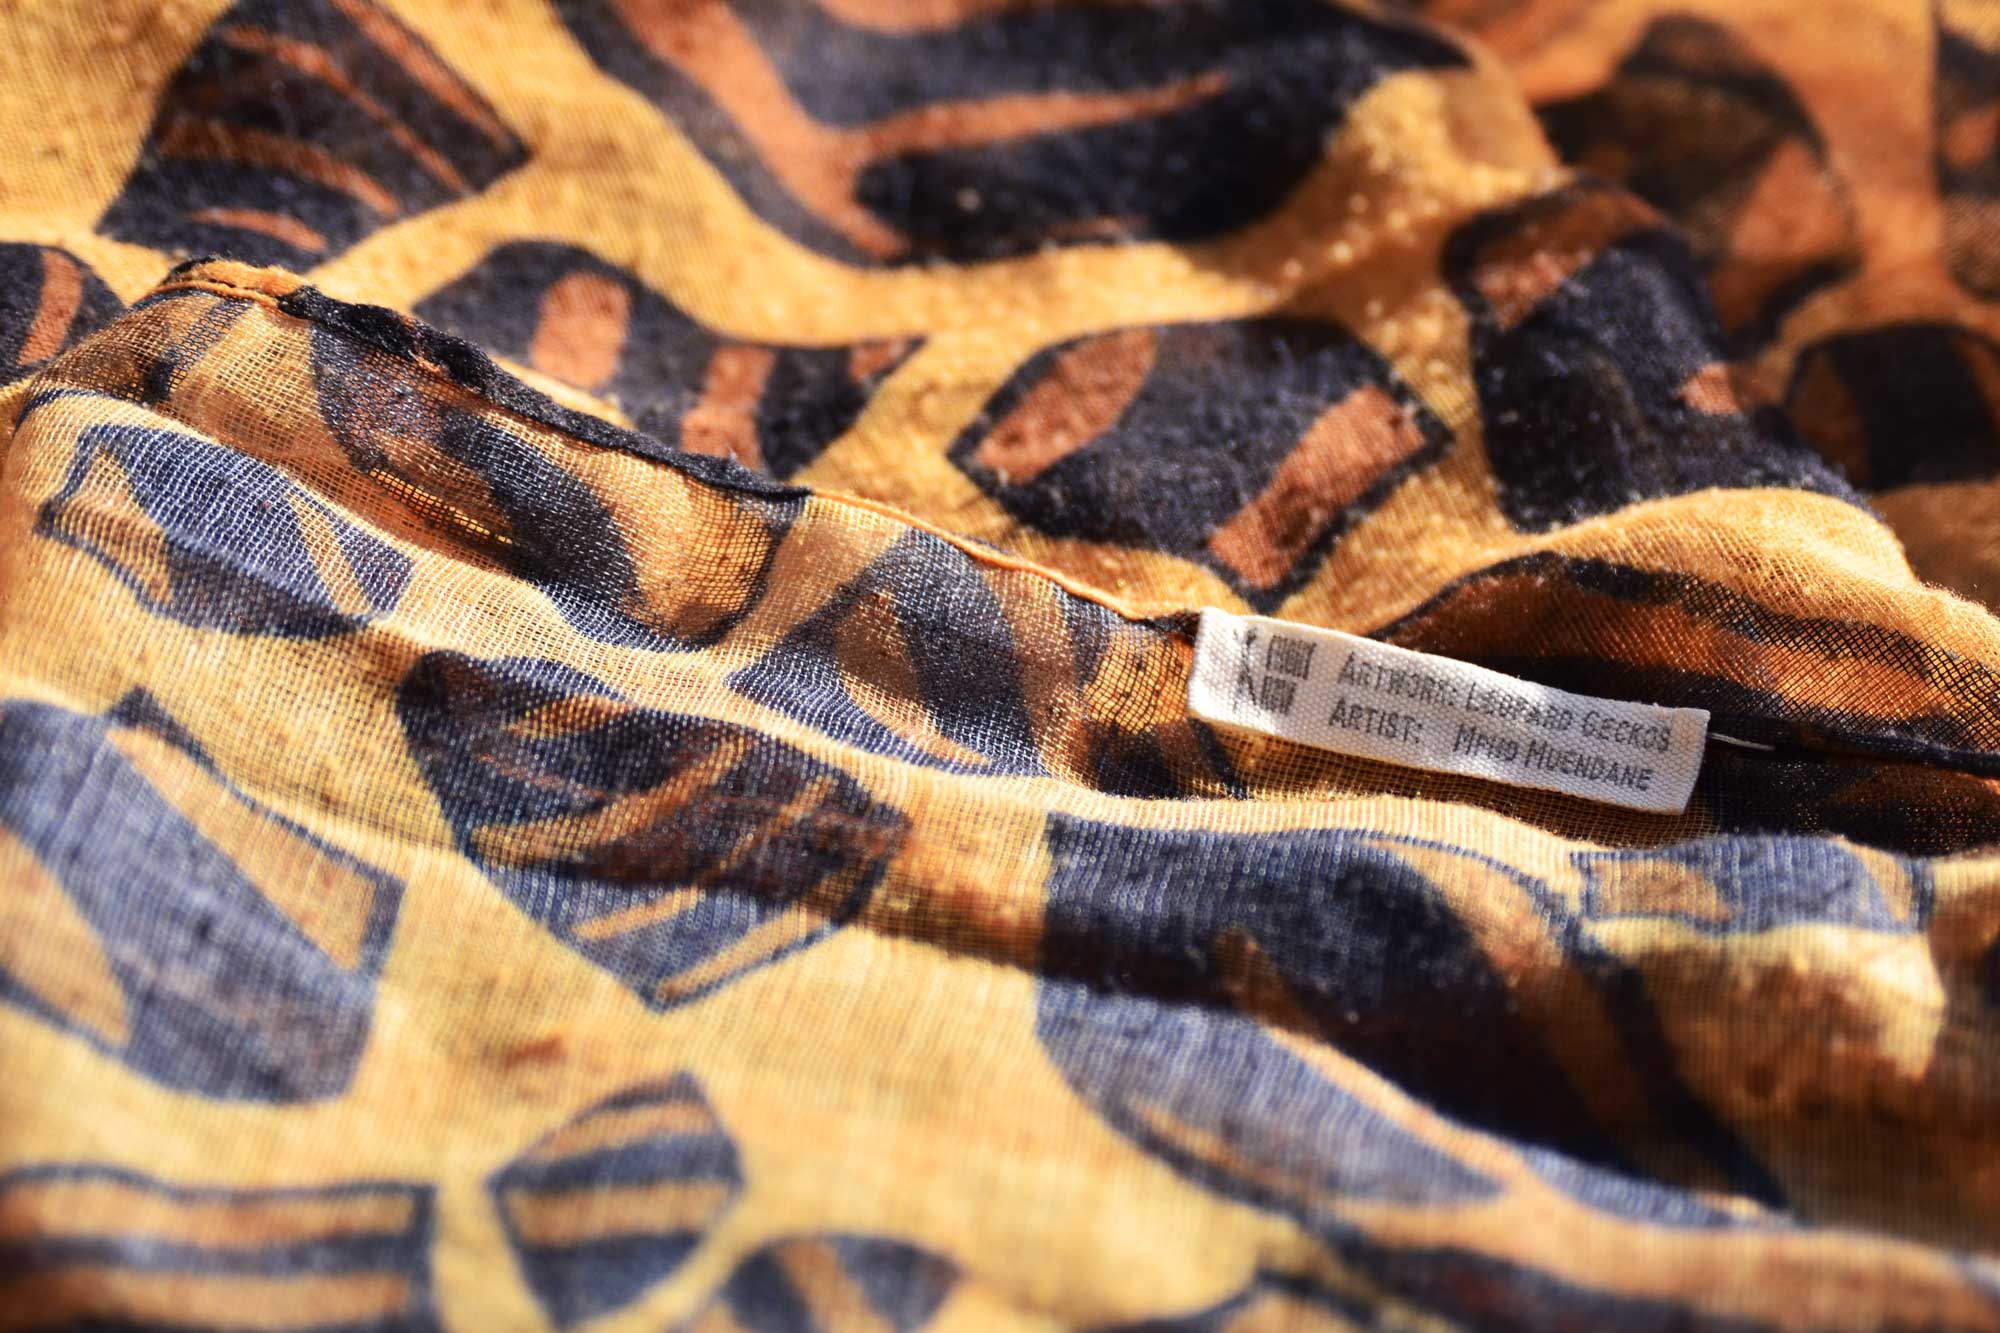 Mphoさんのお気に入りの一つ「Leopard Geckos」のスカーフ。